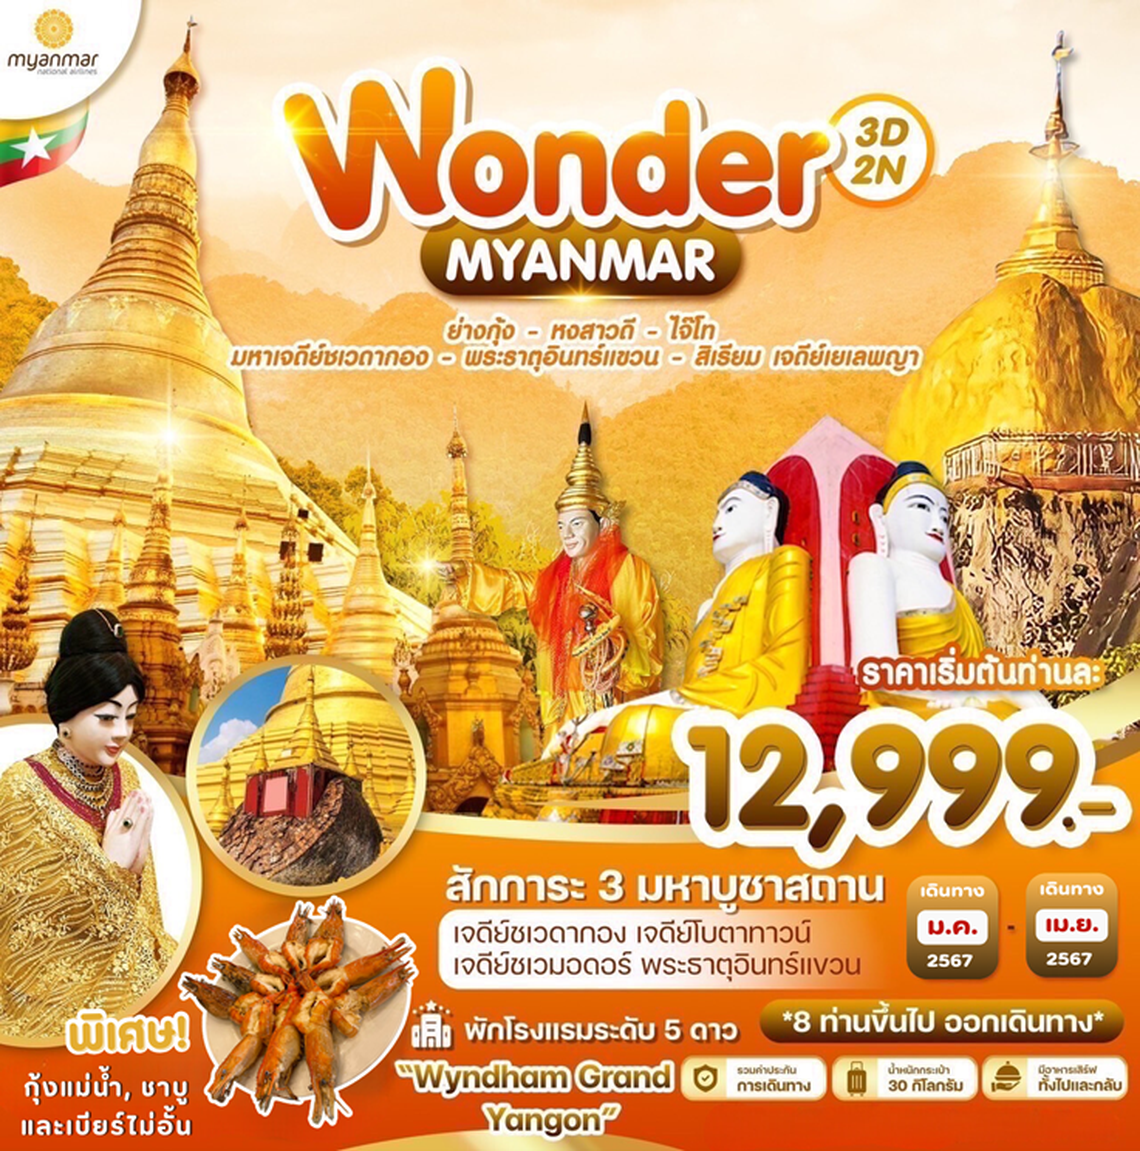 ทัวร์พม่า Wonder Myanmar พม่า ย่างกุ้ง อินทร์แขวน 3 วัน 2 คืน